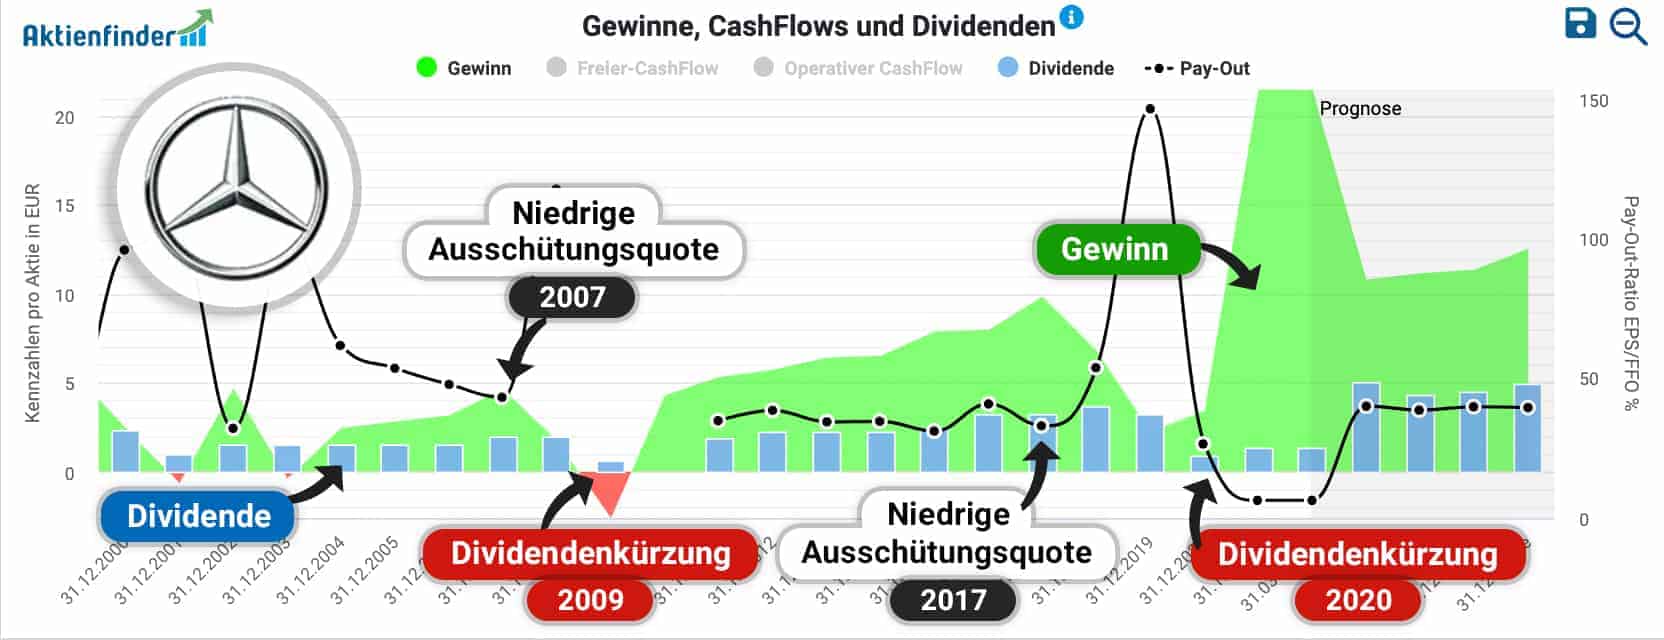 Entwicklung von Ausschüttungsquote, Dividende und Gewinn der Mercedes-Benz-Group